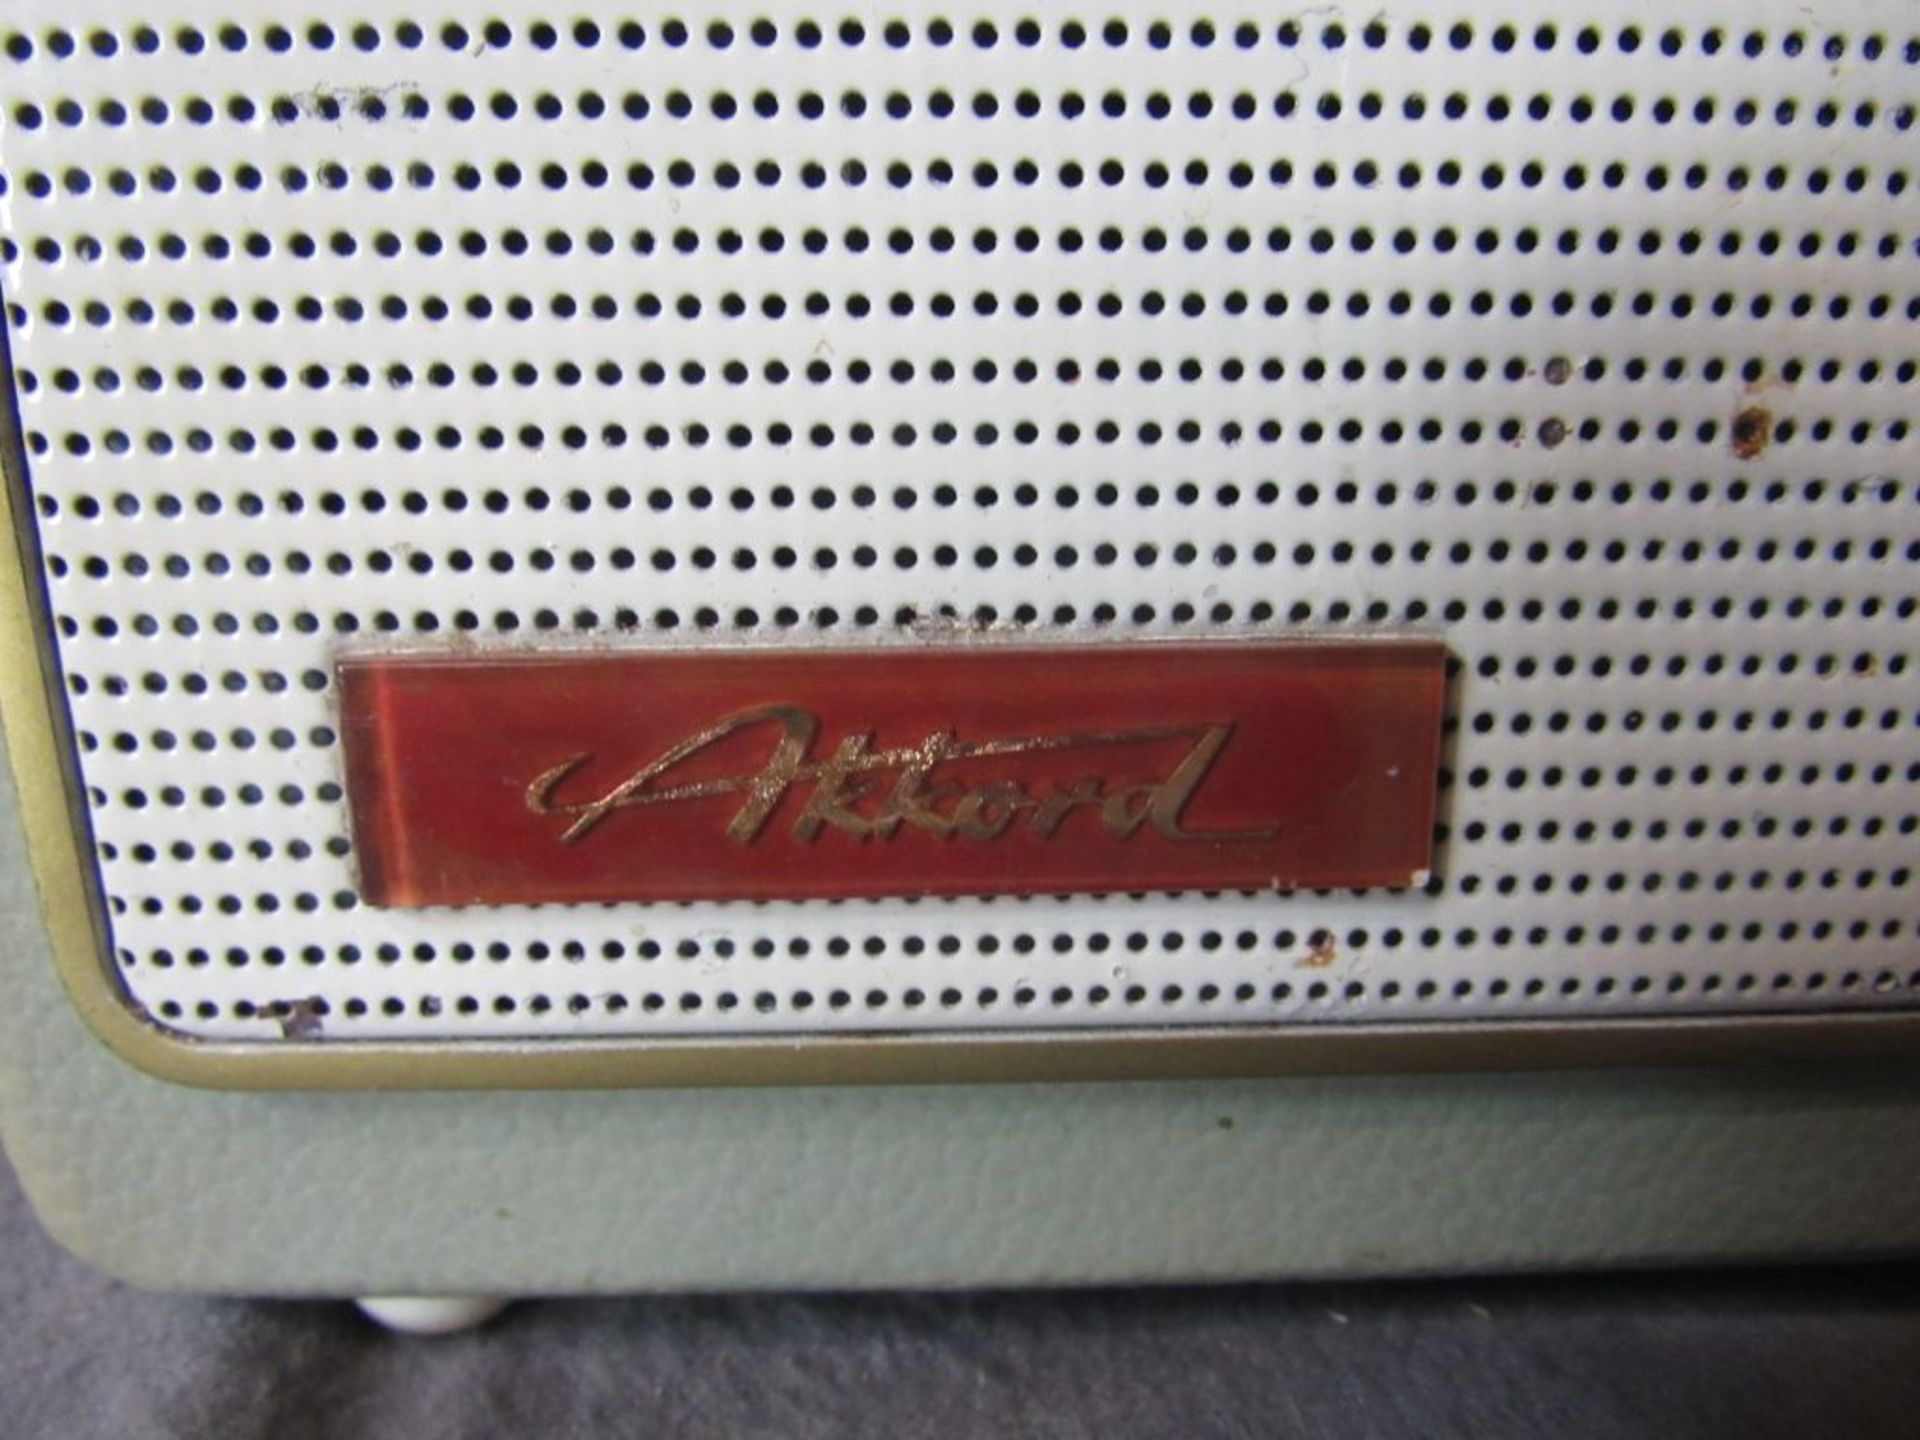 Kofferradio Akord mintgrün 50er Jahre - Bild 2 aus 6